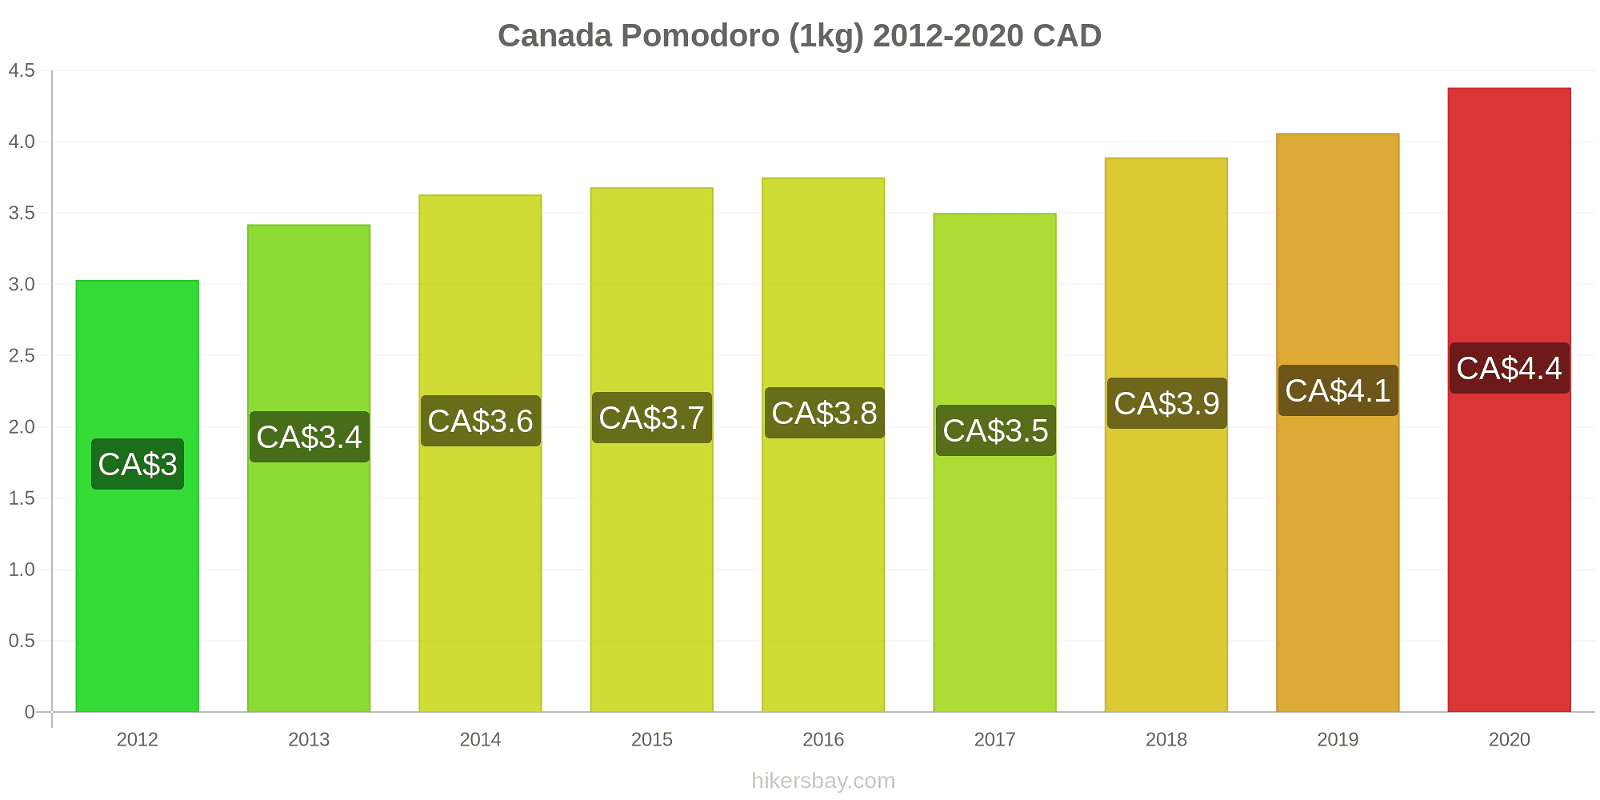 Canada variazioni di prezzo Pomodoro (1kg) hikersbay.com